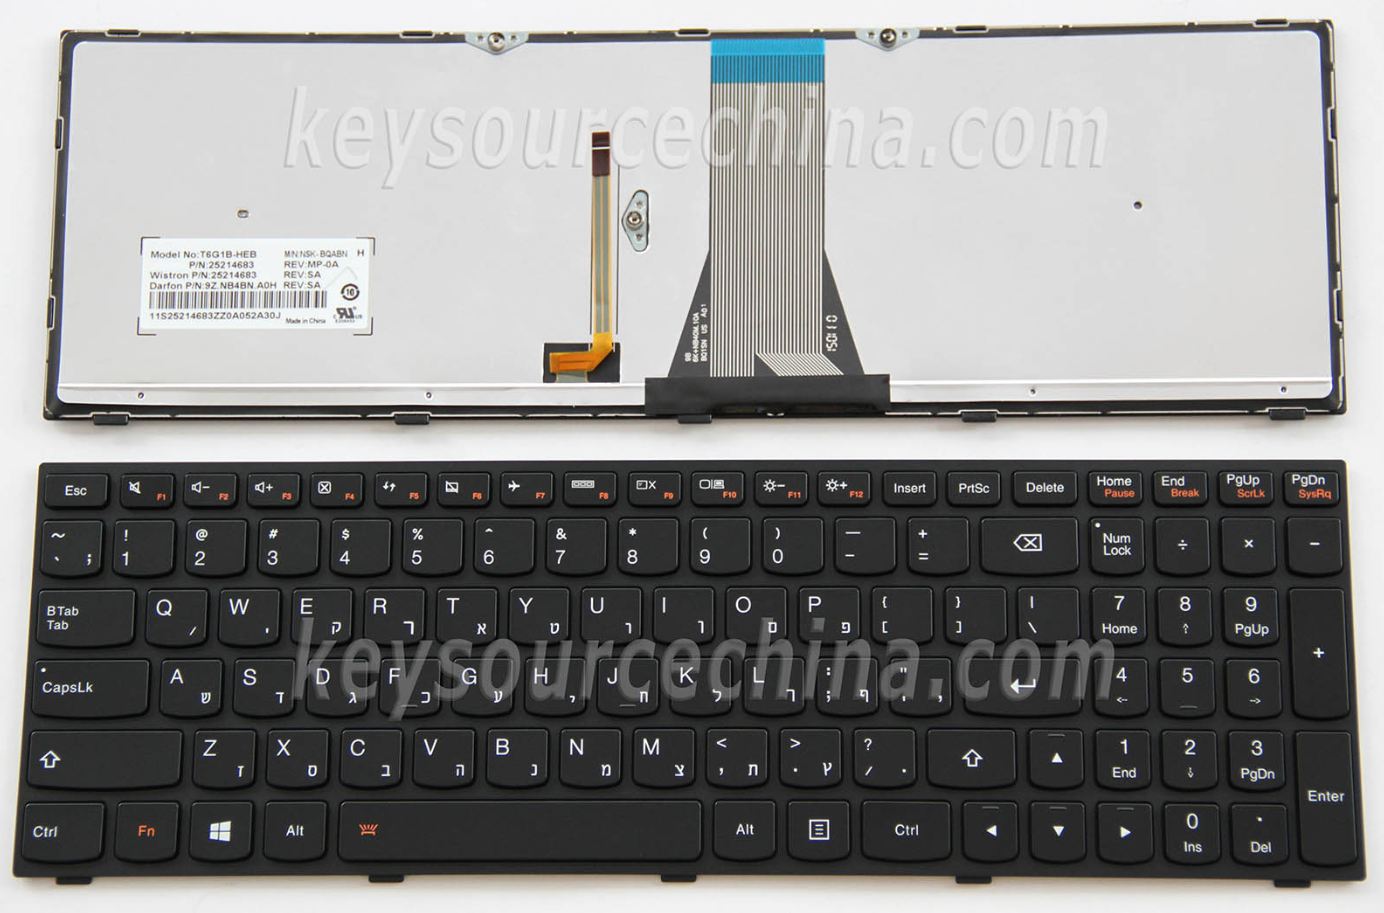 T6G1B-HEB Hebrew Laptop Keyboard Israel HE,Lenovo IdeaPad 500-15ISK Hebrew Laptop Keyboard Israel HE Backlit